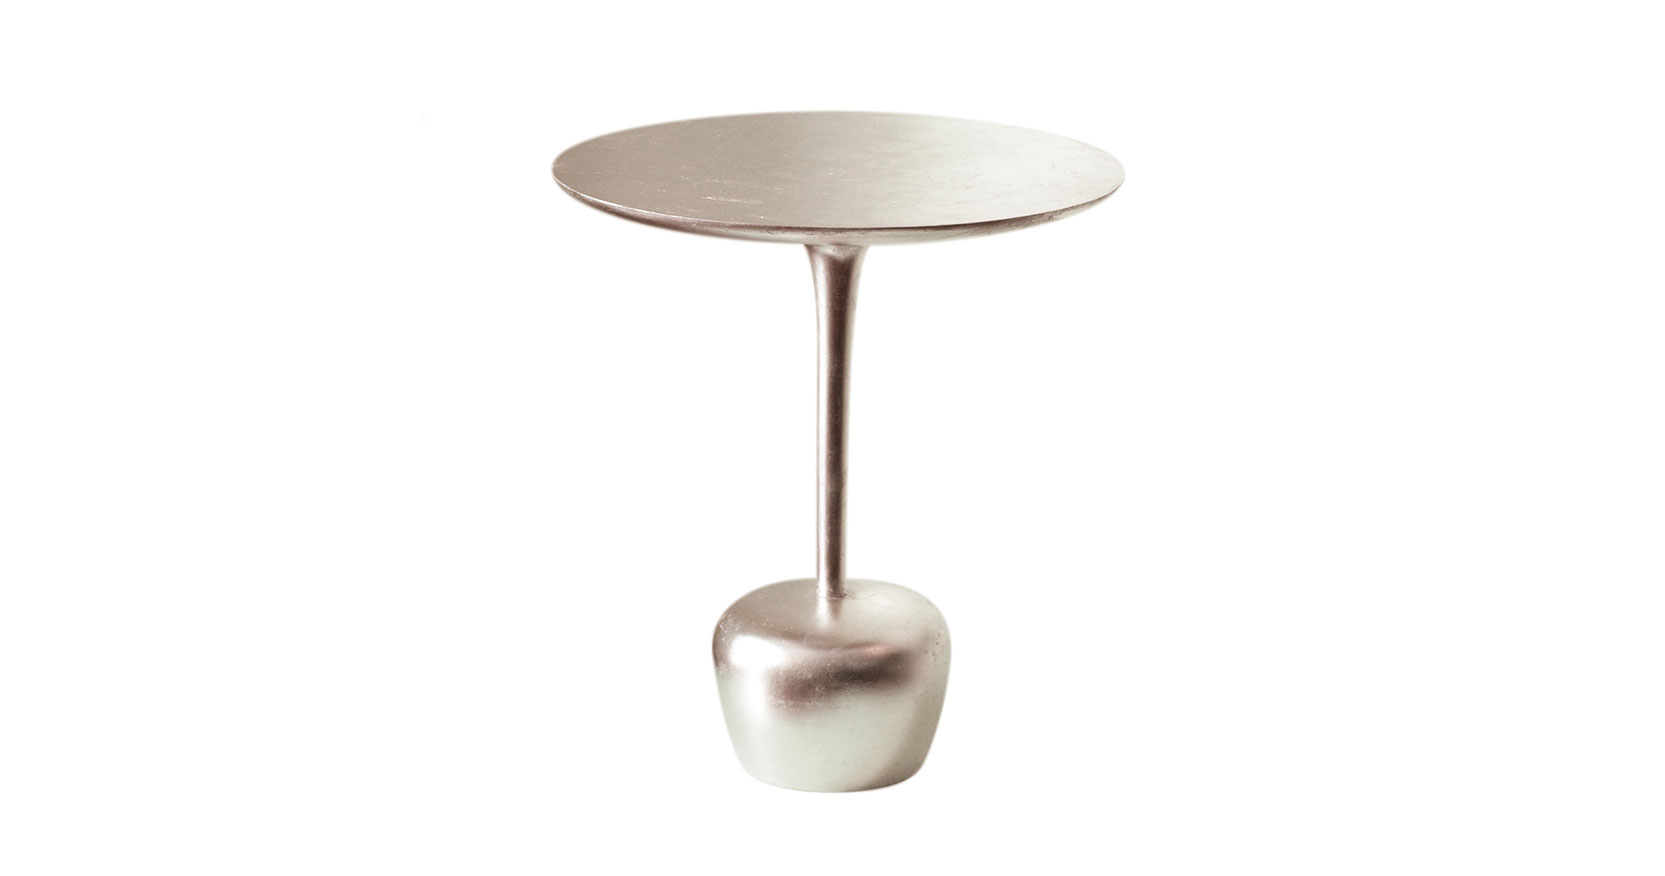 Christian Ghion, petite table ronde en bois entièrement argenté, pied central se terminant en bas en forme de pomme stylisée